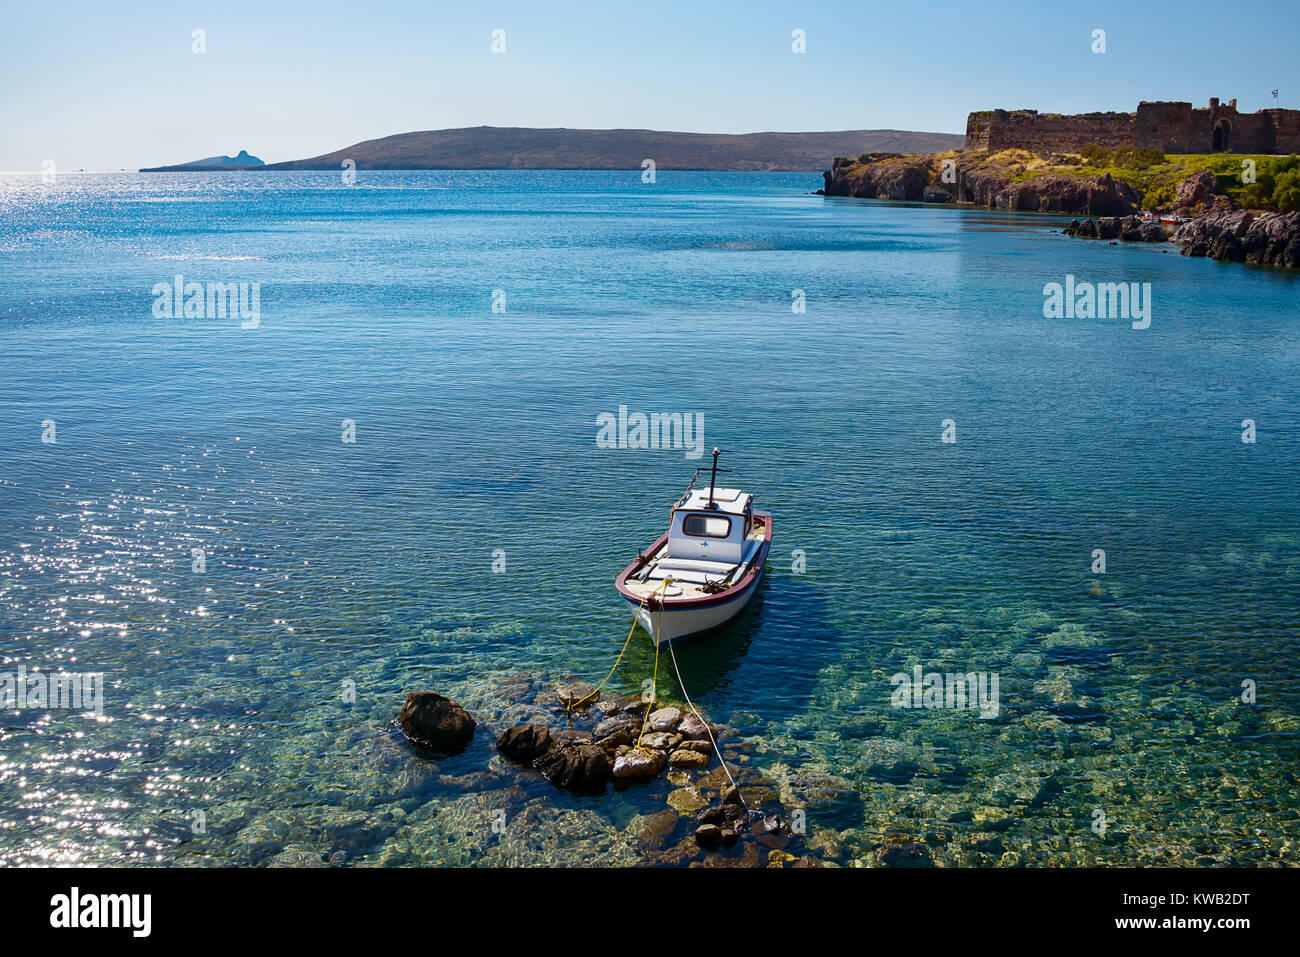 Piccola barca da pesca ormeggiate presso la costa sassosa di Sigri con il castello waterside, Lesbo, Egeo Orientale, la Grecia, l'Europa. Foto Stock